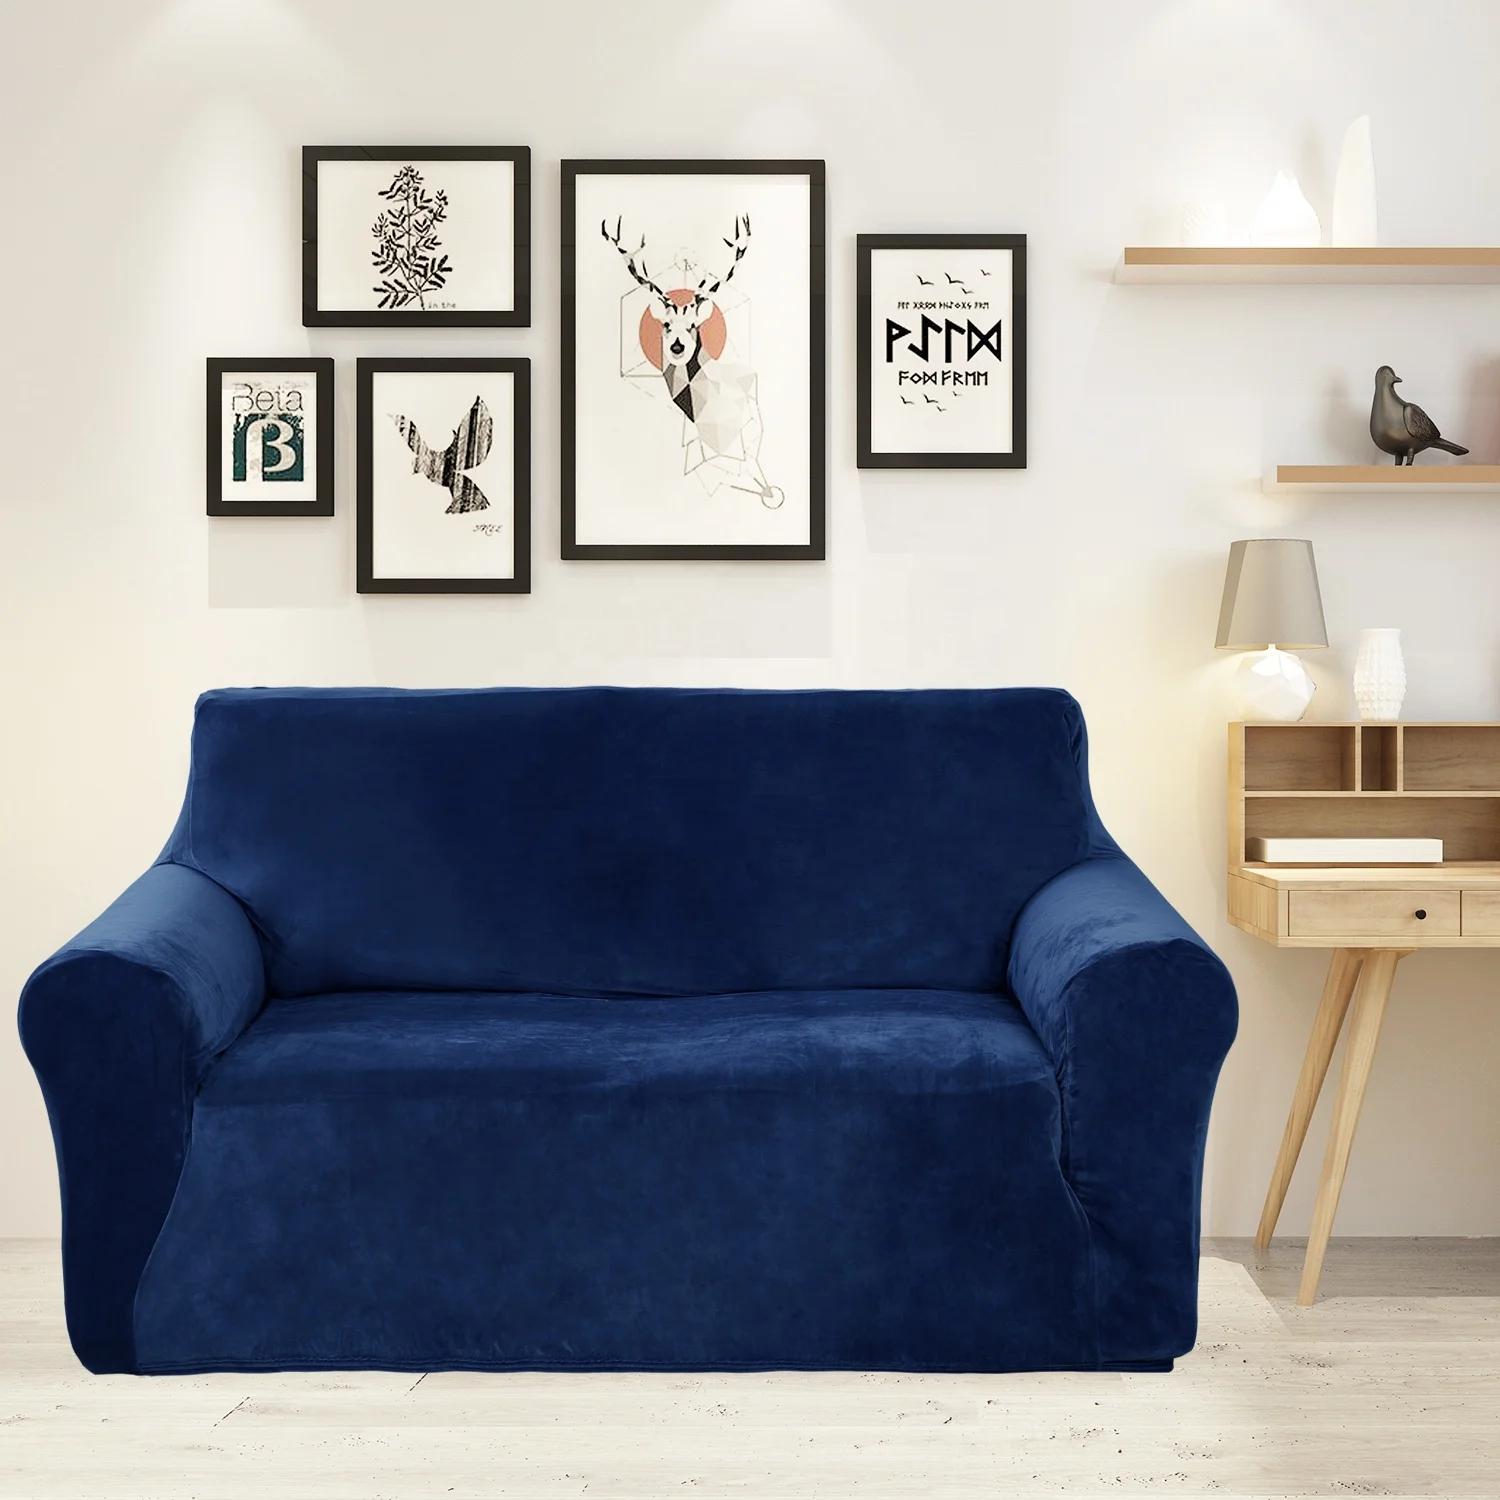  KUYUC Mantas para sofá, funda de sofá tejida para decoración  del hogar, oficina, viajes y decoración del hogar (color azul, tamaño: 70.9  x 141.7 in) : Hogar y Cocina